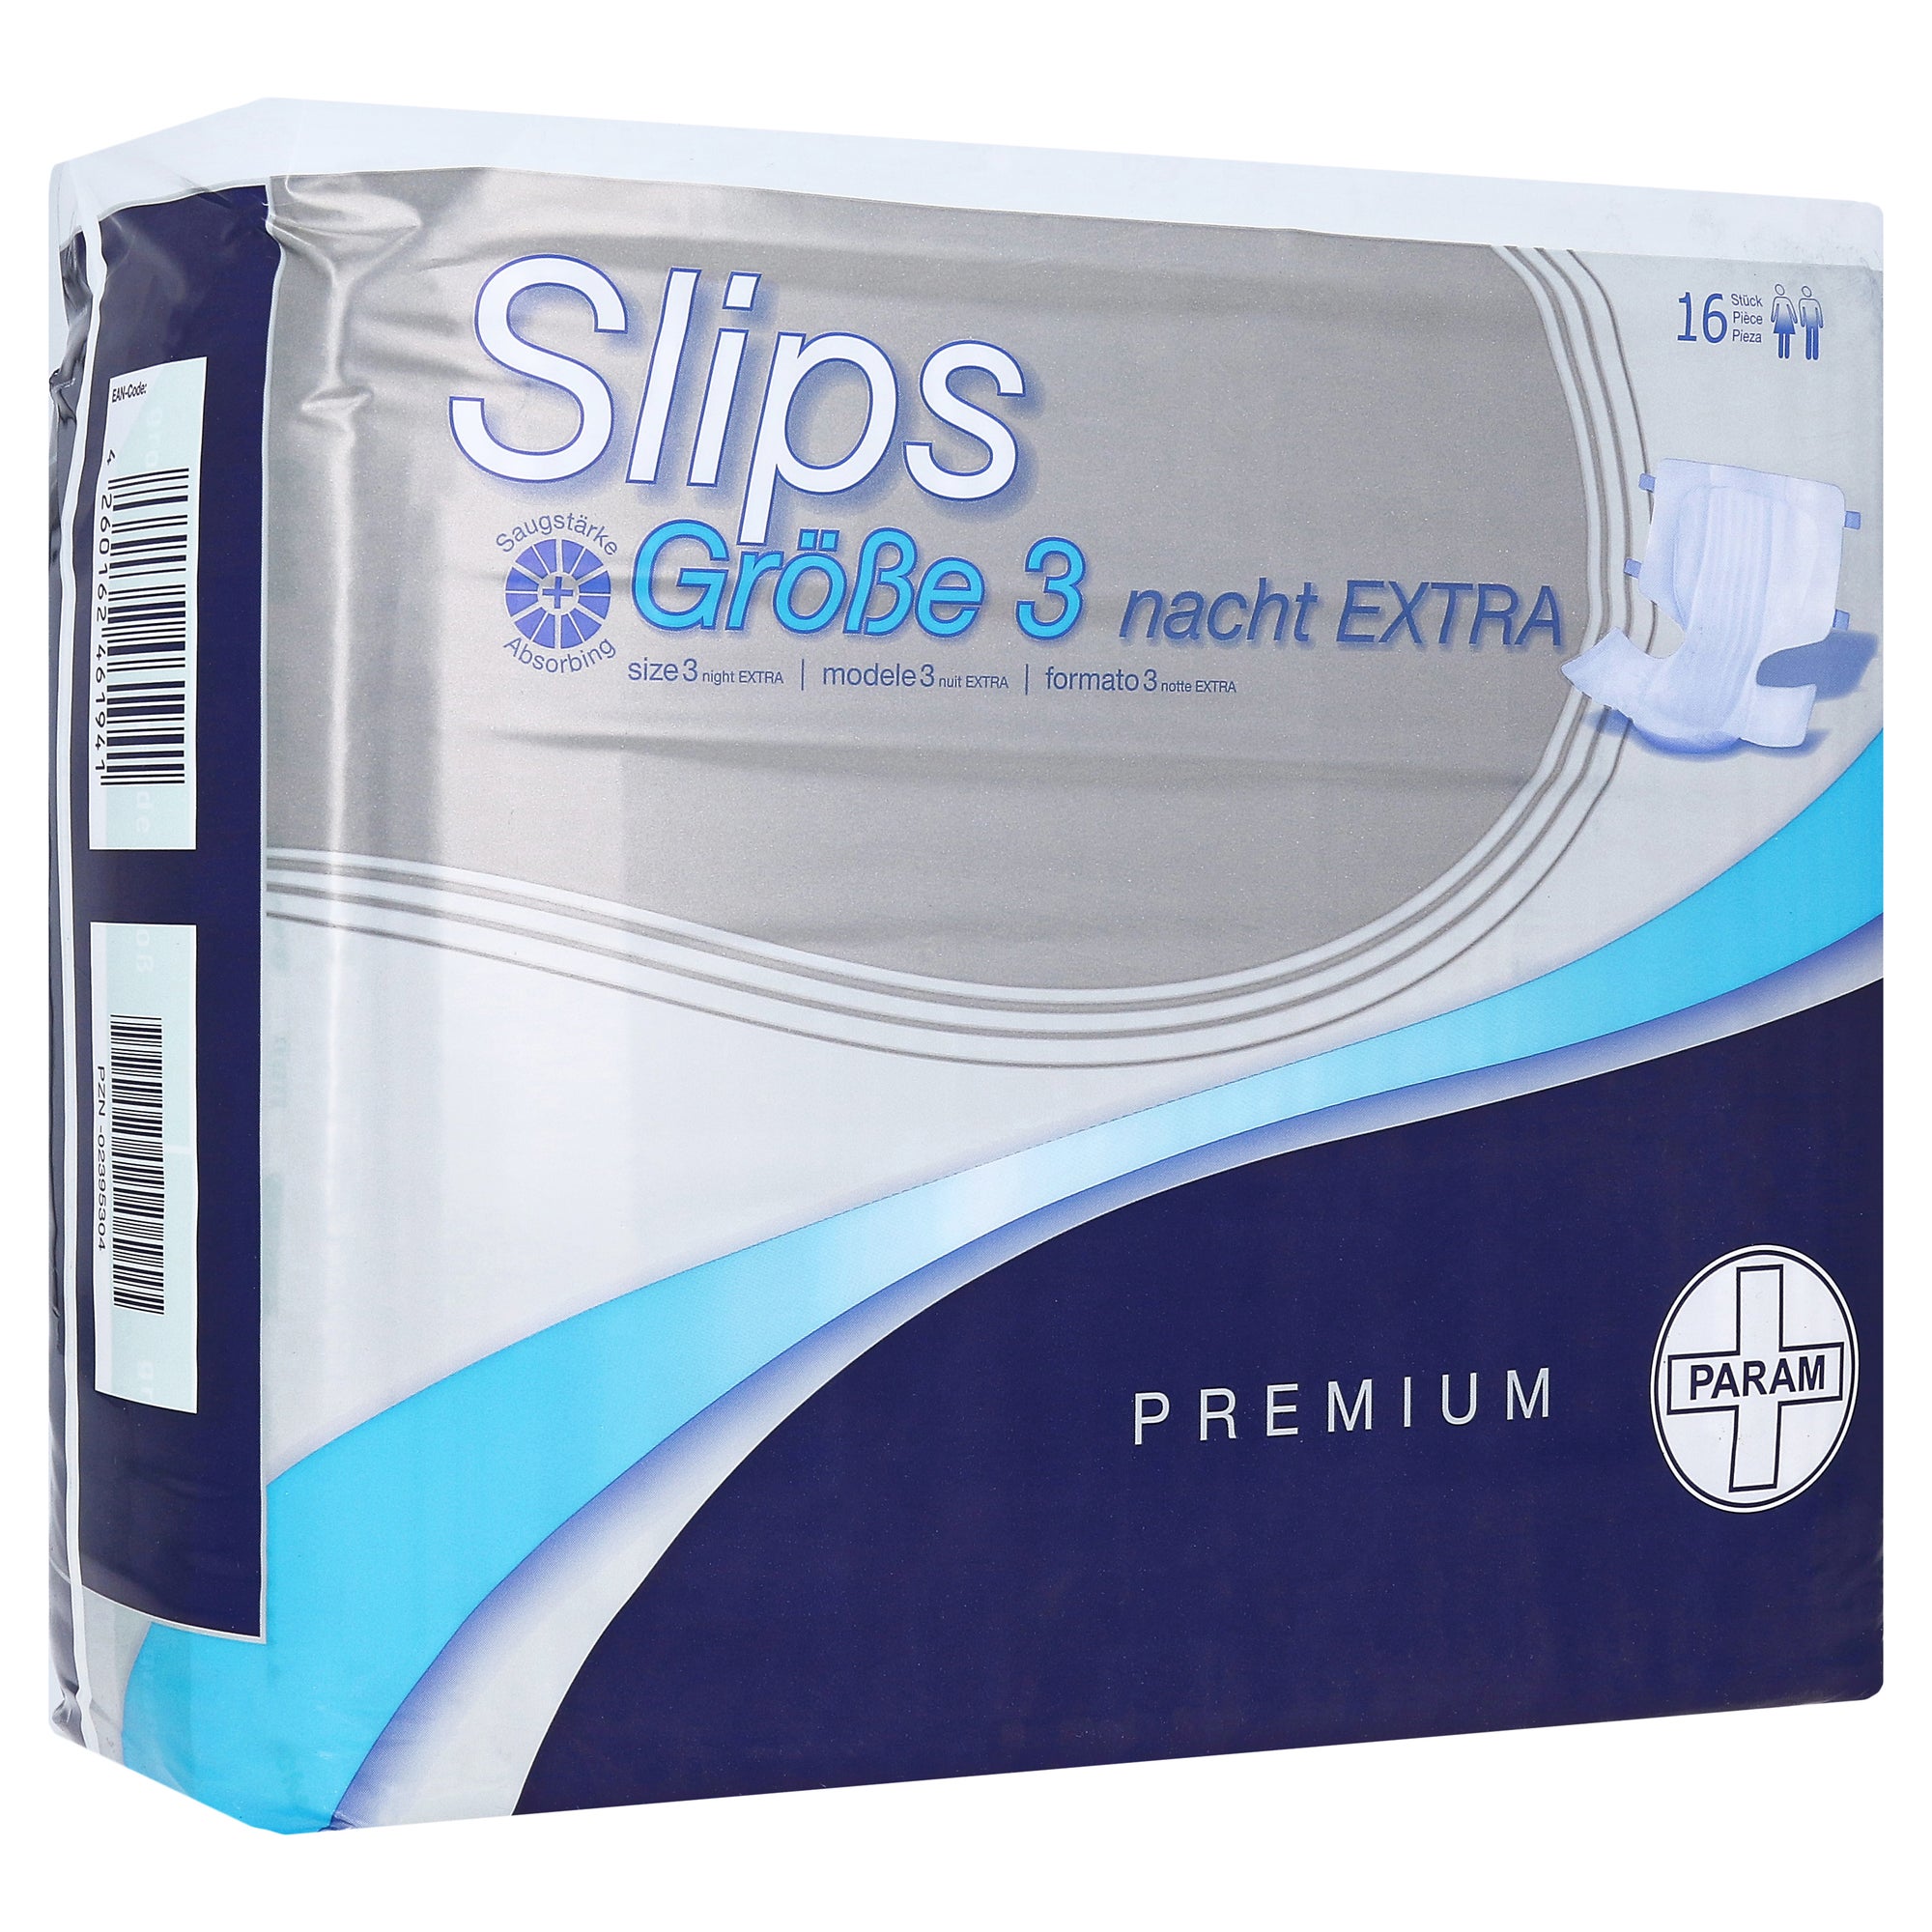 Param Slip Premium Nacht EXTRA Gr.3, 16 St. online kaufen | DocMorris